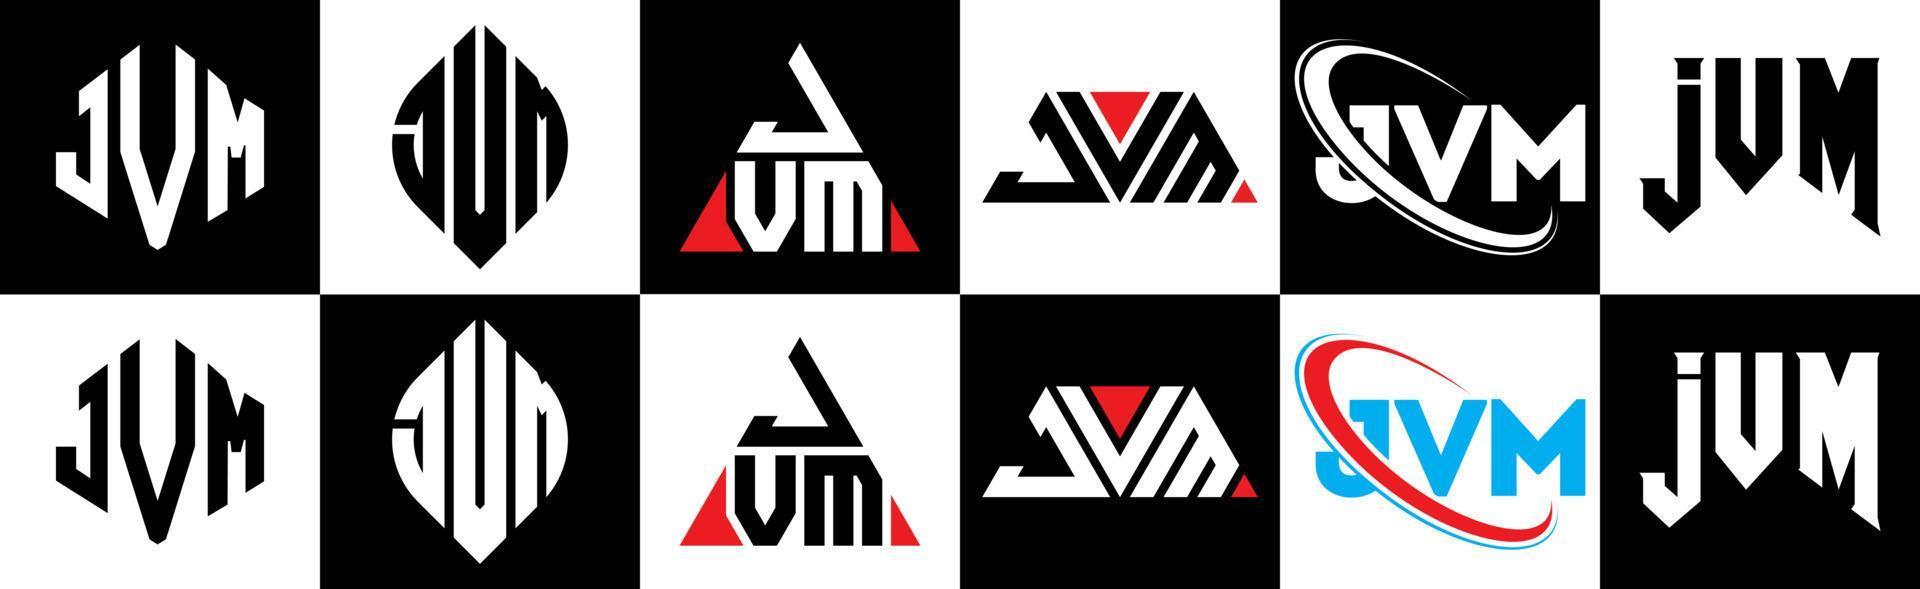 Diseño de logotipo de letra jvm en seis estilos. jvm polígono, círculo, triángulo, hexágono, estilo plano y simple con logotipo de letra de variación de color blanco y negro en una mesa de trabajo. logotipo minimalista y clásico de jvm vector